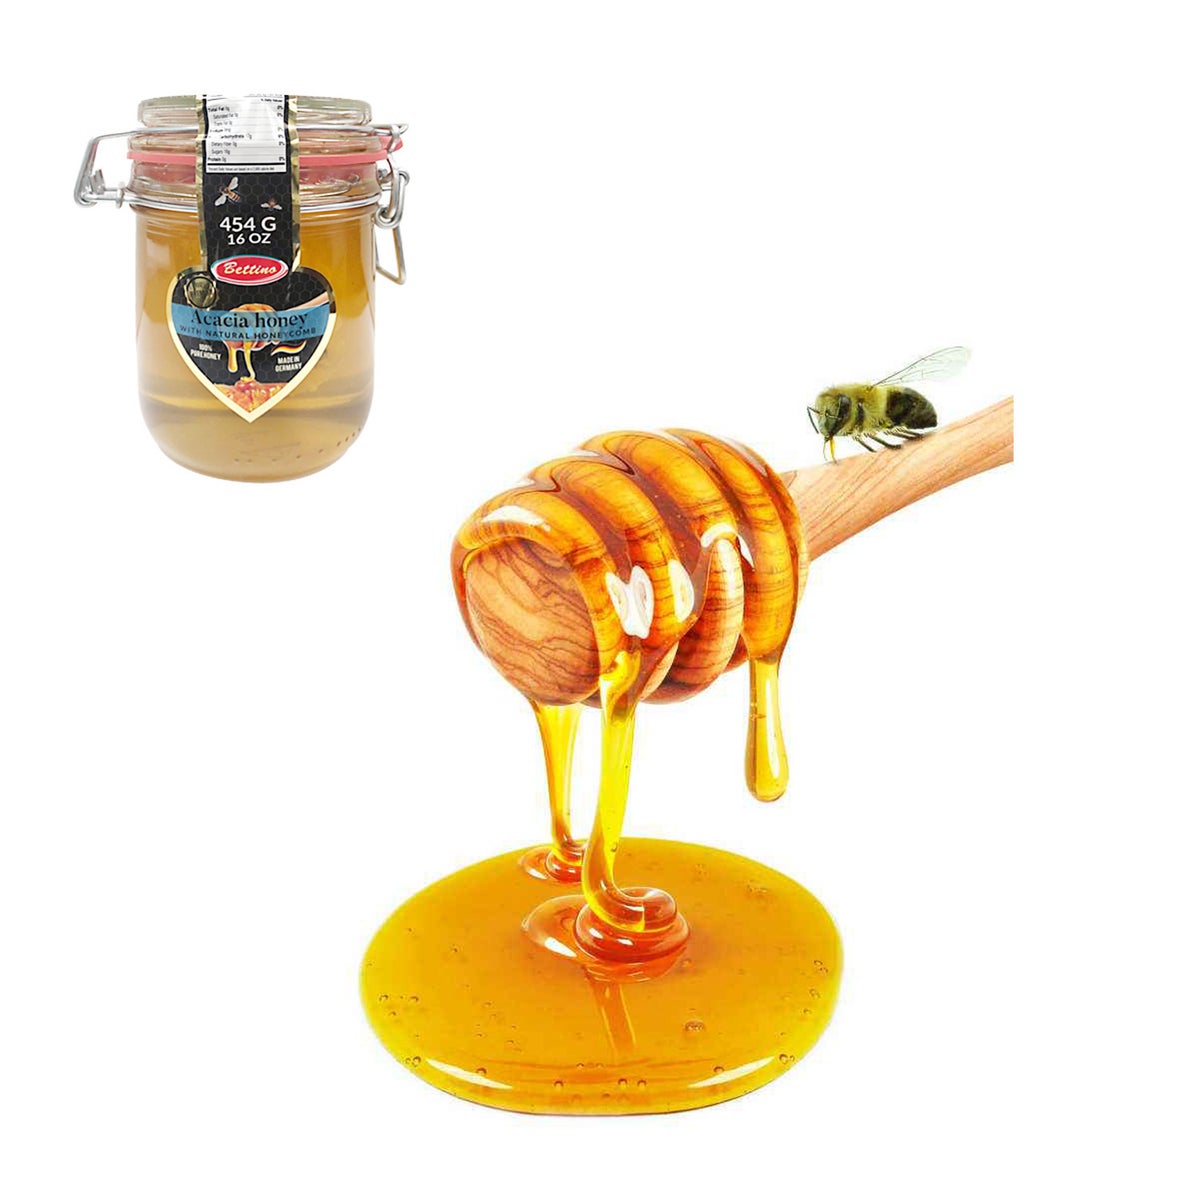 Bettino Acacia Honey with Natural HoneyComb 16oz 454g        643700279088